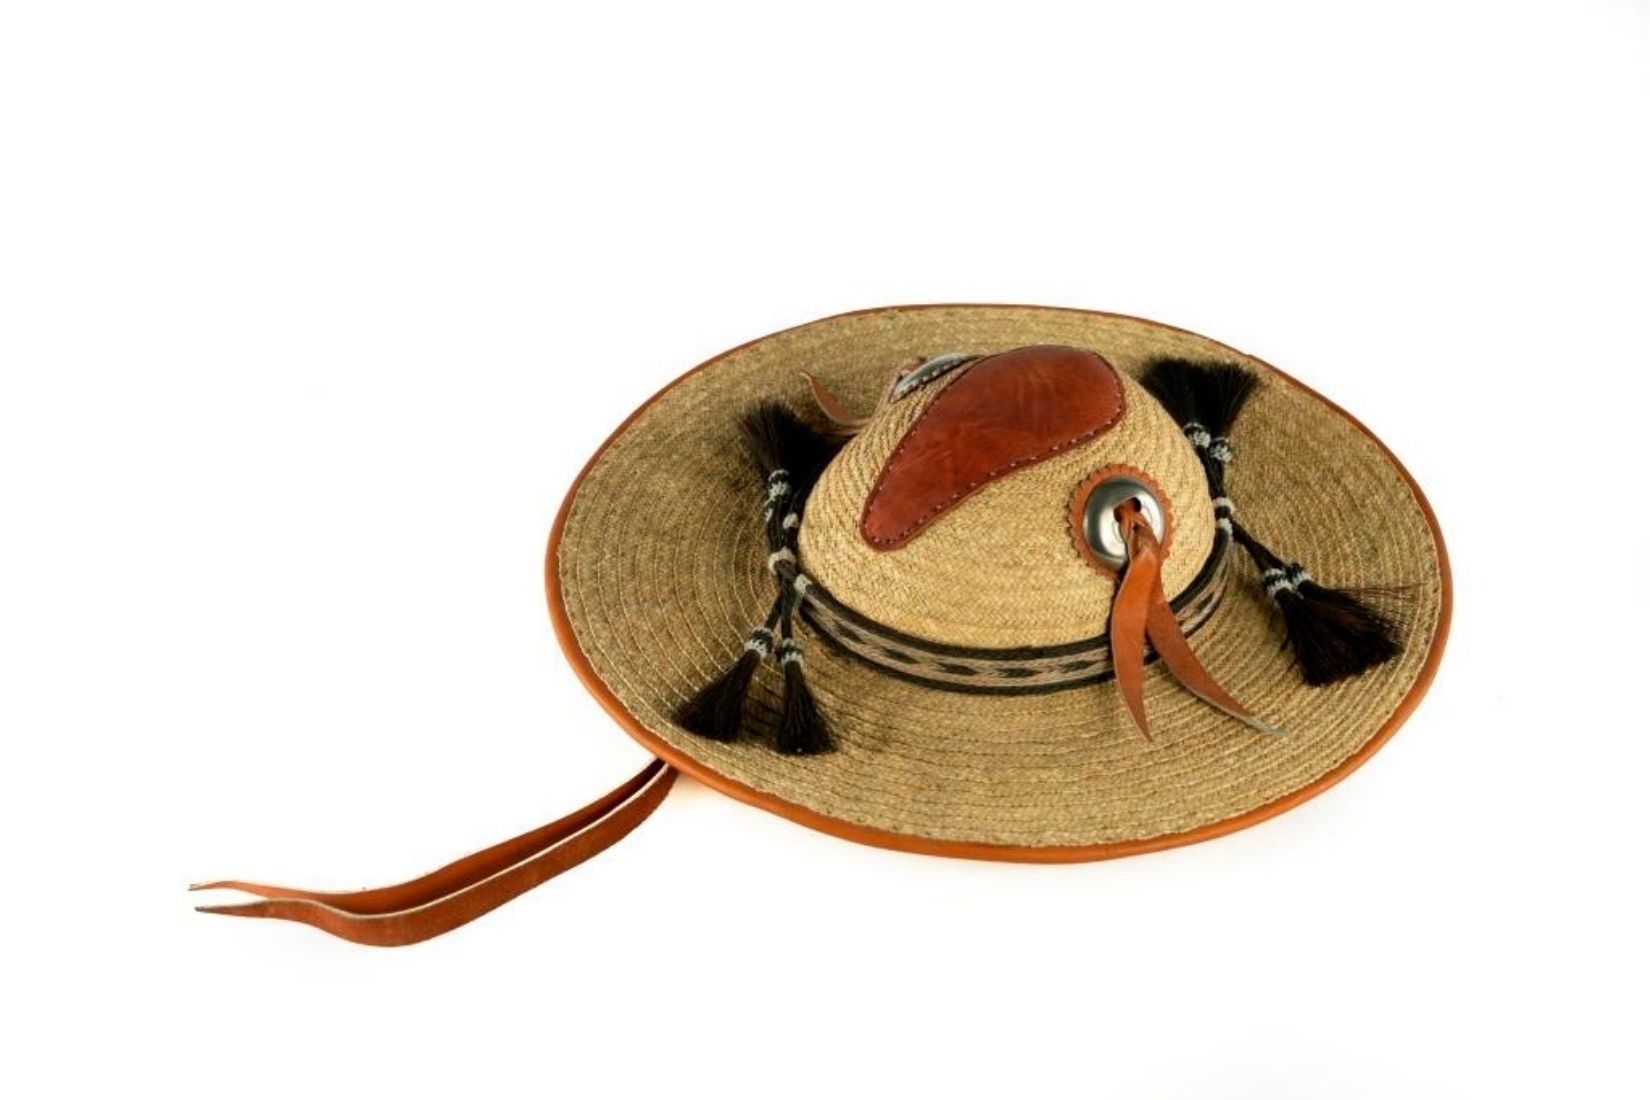 Sombrero cora de palma tejida con piel y crin de caballo. Artesano desconocido. Nayarit. Col. Populart. (Foto: EKV).